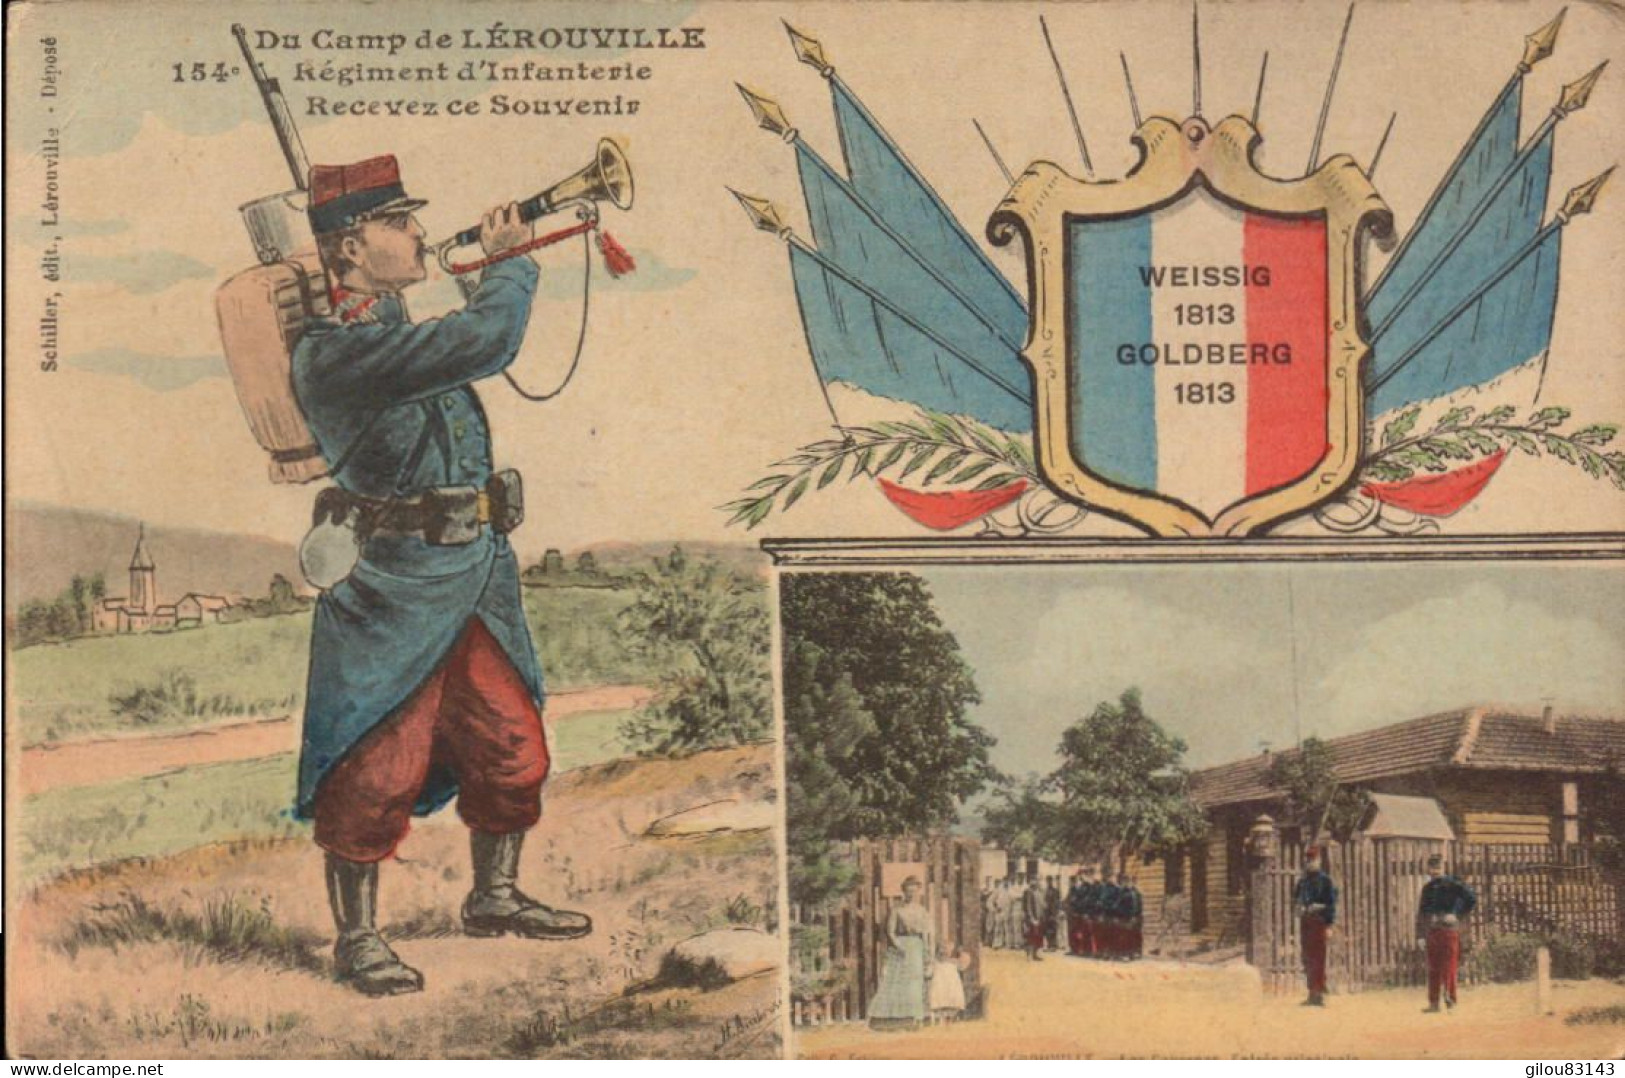 Camp De Lérouville, 154e Regiment D Infanterie Recevez Ce Souvenir - Regiments